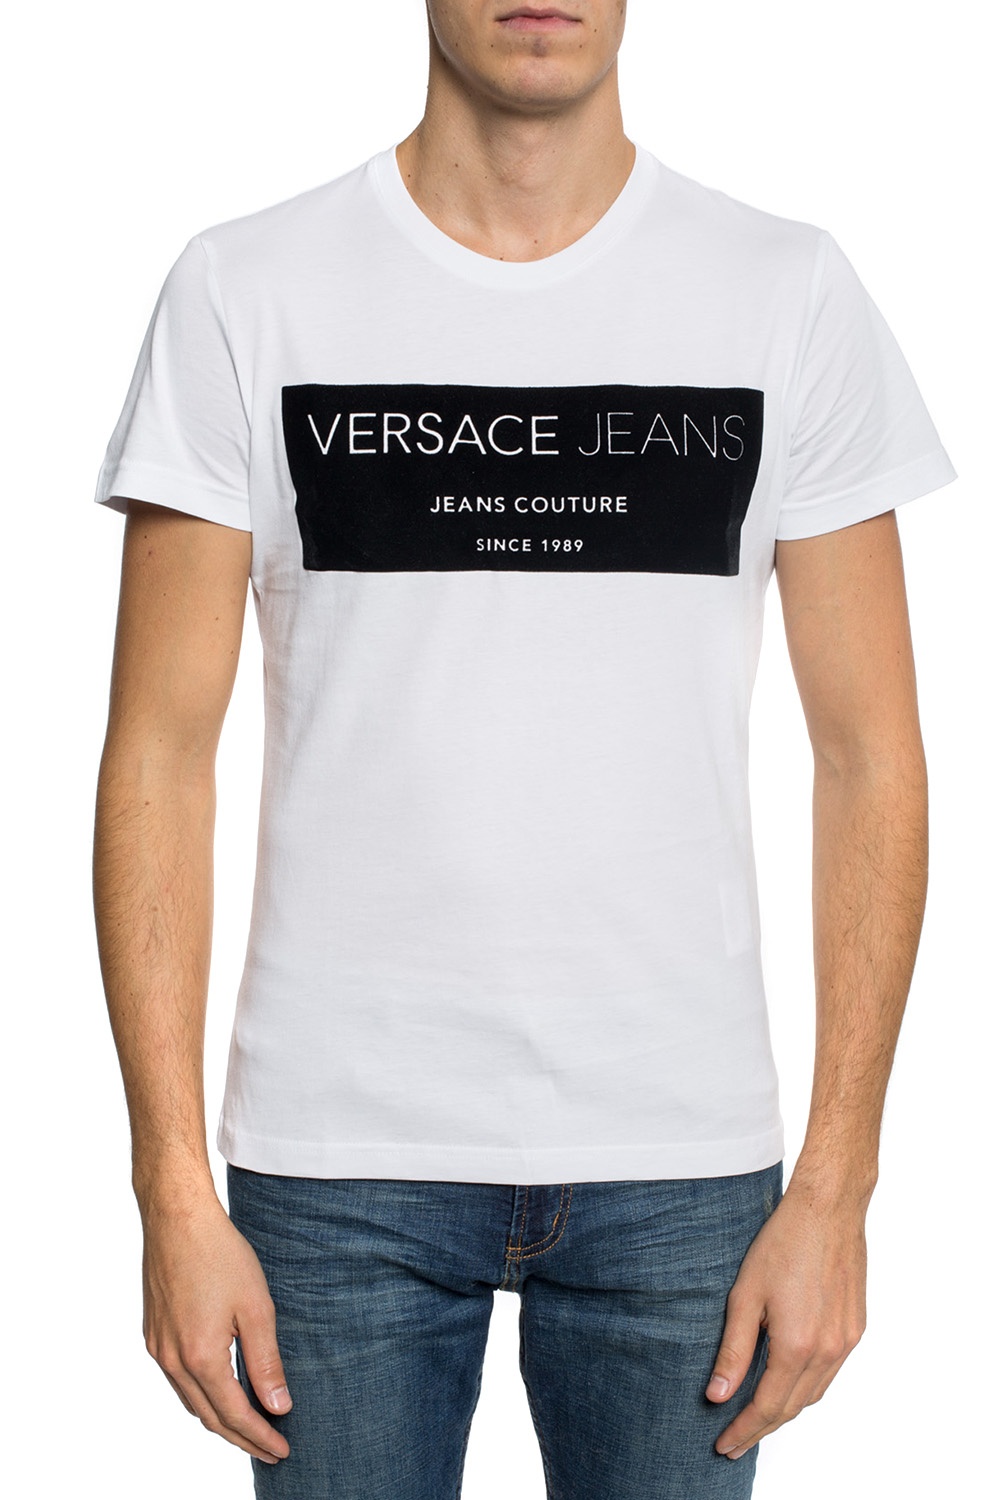 versace velvet shirt